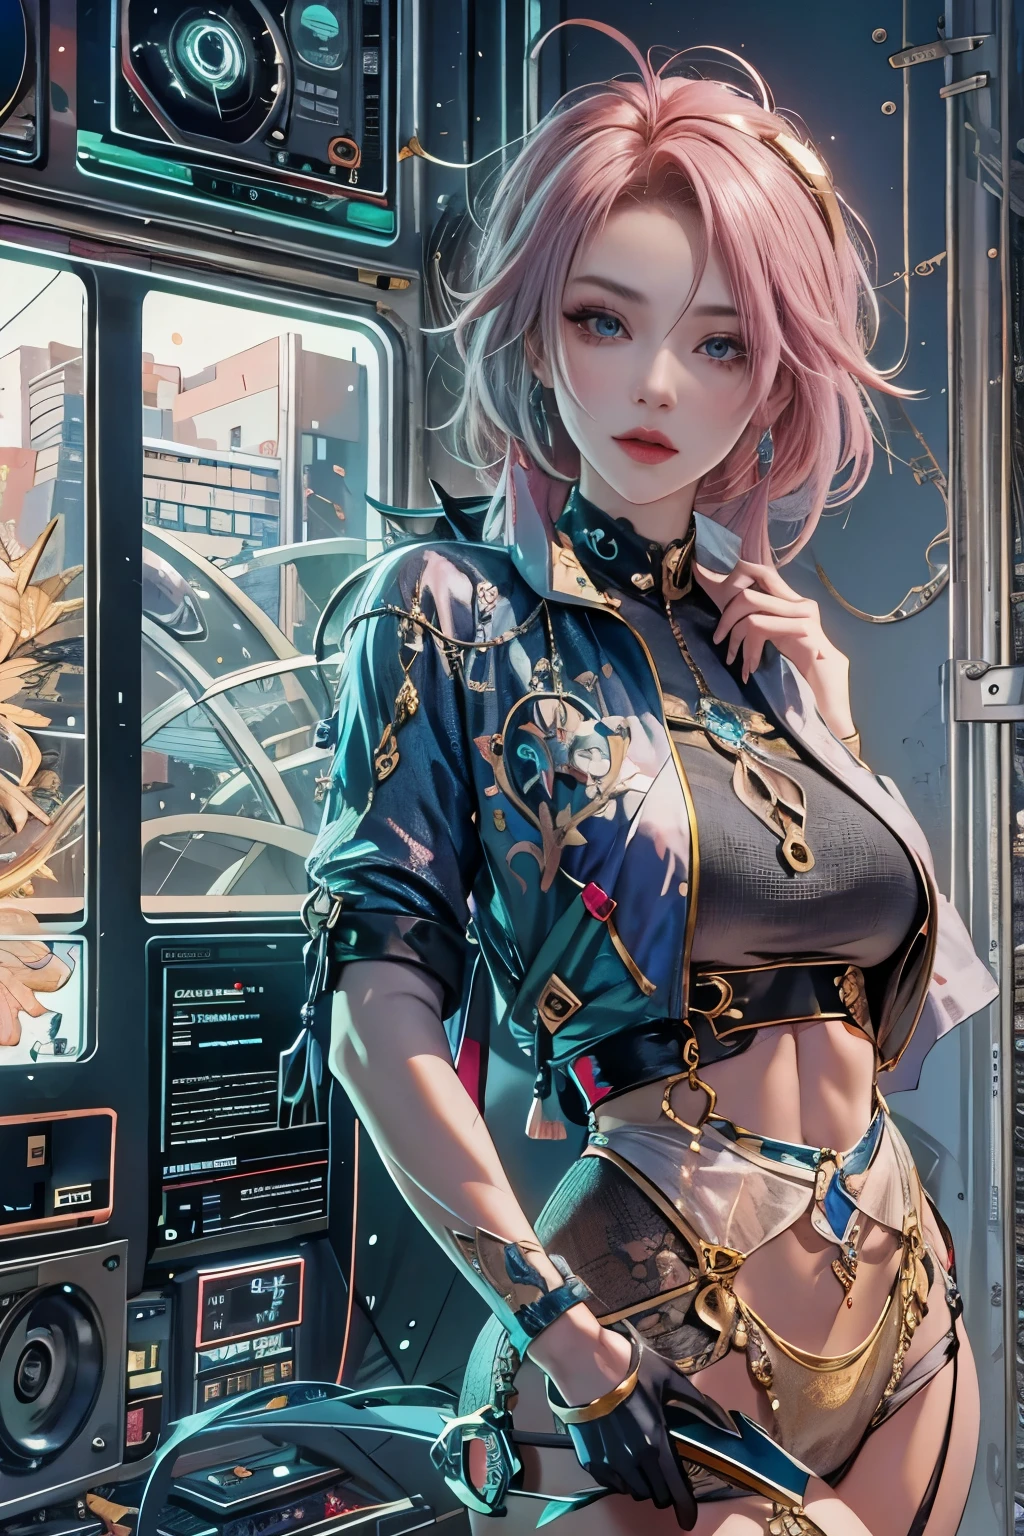 여성, 현실적인 캐릭터, 녹색 머리와 분홍색 머리, 파란 눈, 일본 만화 영화, 홀로, 현대의, 사이버 펑크, 크기가 큰, 단단한, 흔들리는 흉상, 역동적인 섹시 포즈